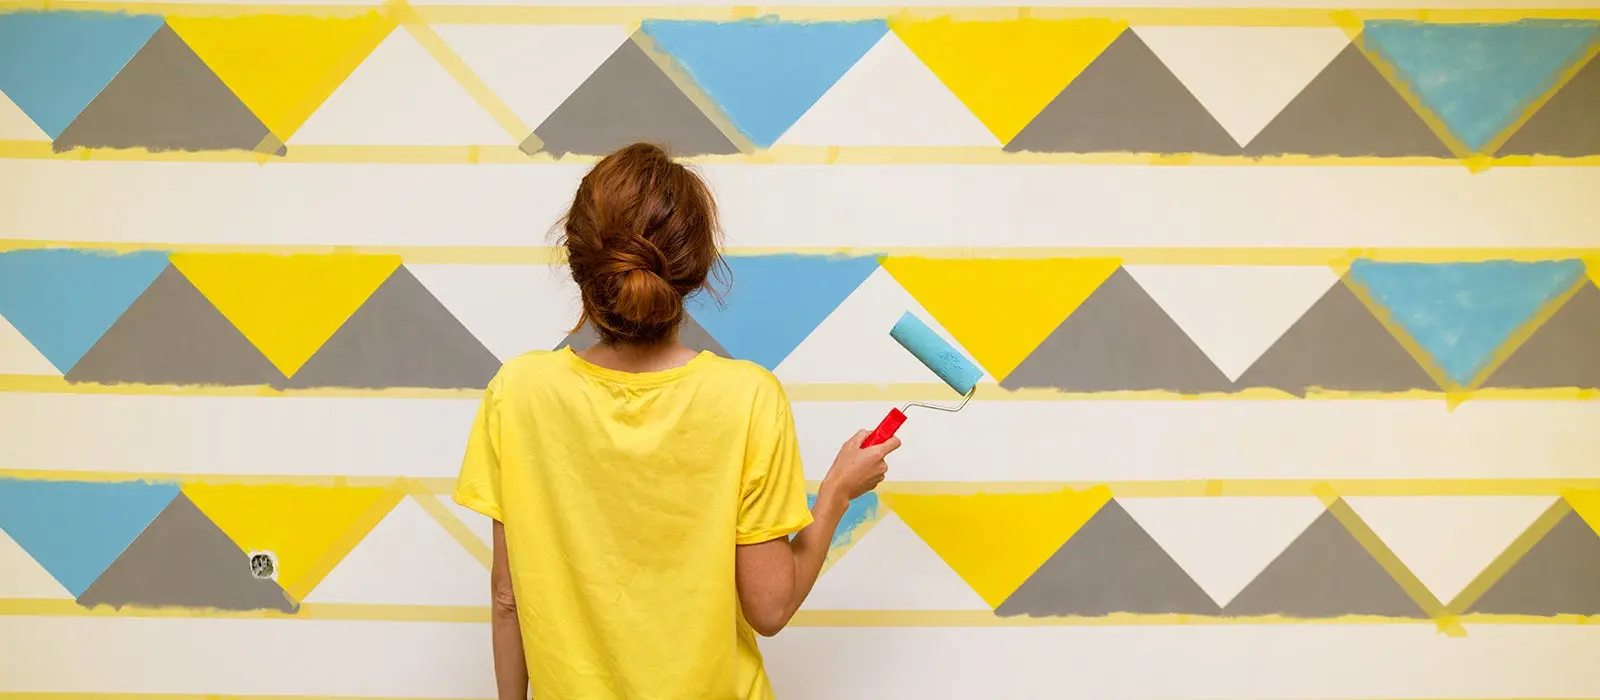 Mujer de espaldas con una camisa amarilla y en su mano derecha un rodillo pintando una pared con formas de triangulos 